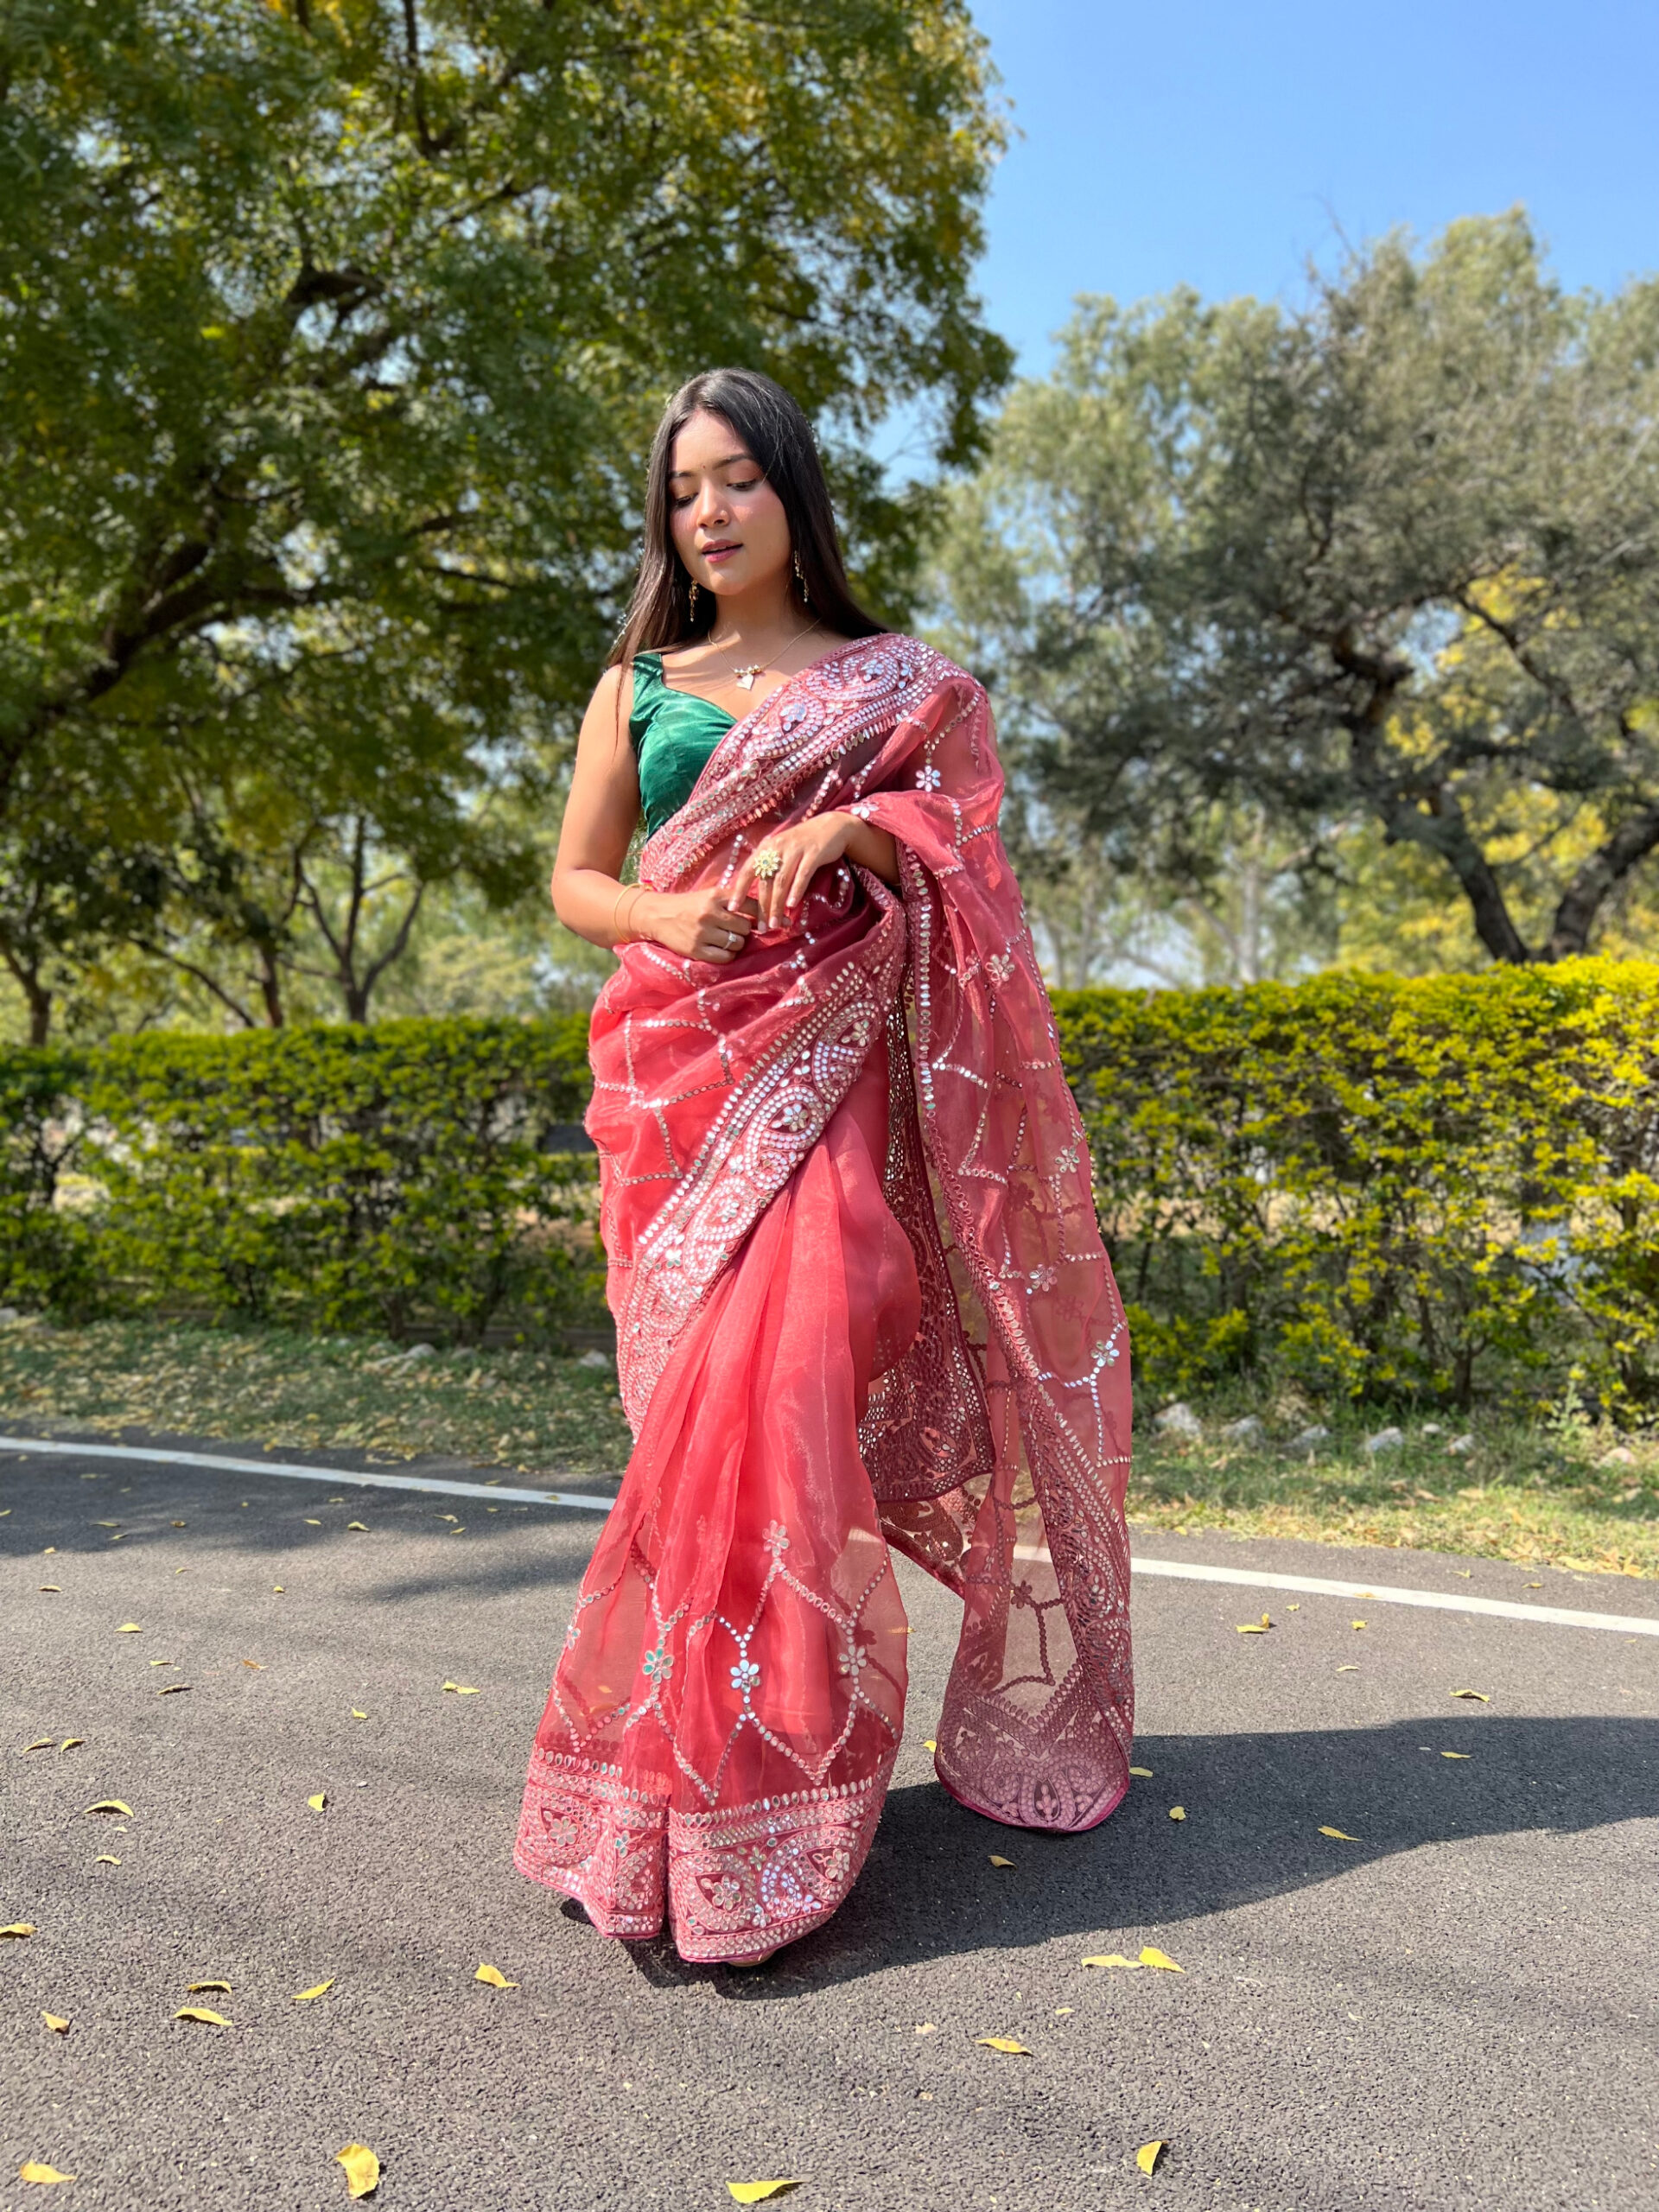 Amazing Red Colored Designer Saree, Saris, Bollywood Sarees, Fashion Sarees,  Wedding saris, Designer sarees, Traditional sarees, Party wear sarees,  Indian ethnic wear saris, evening wear saris, Bridal wear Sarees.